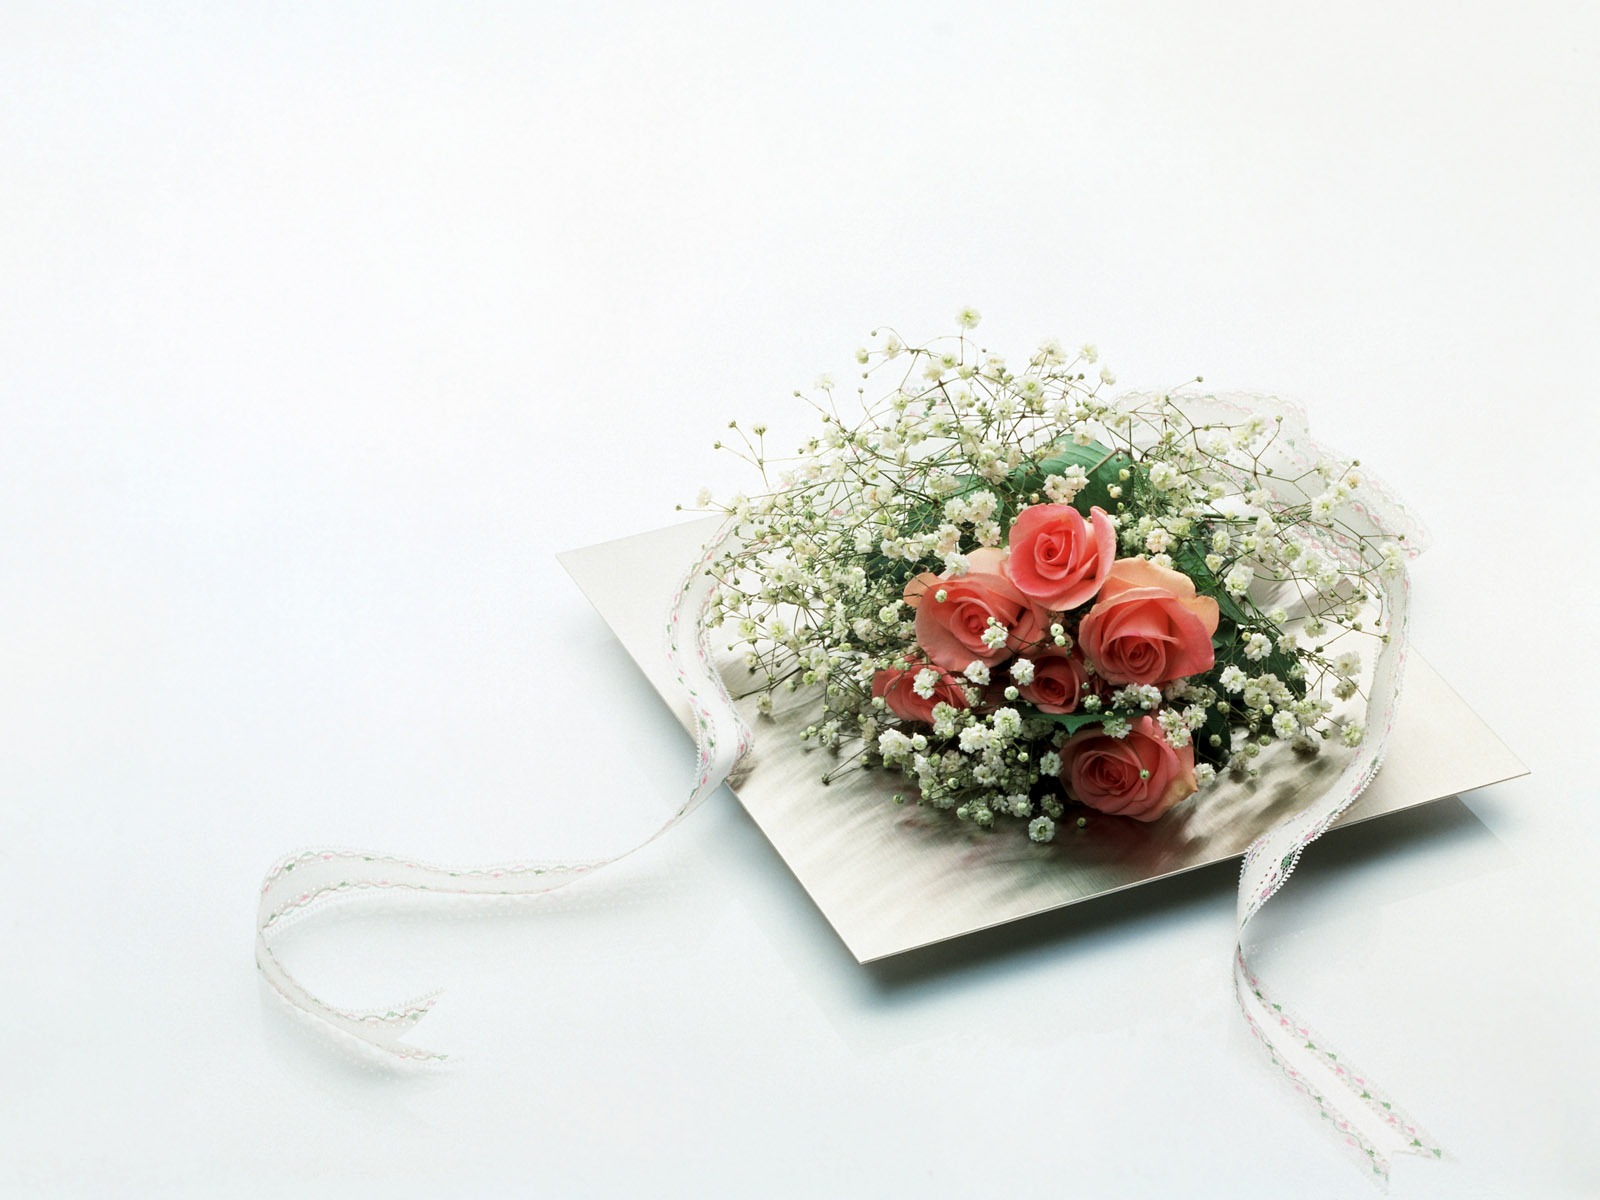 婚庆鲜花物品壁纸(二)3 - 1600x1200